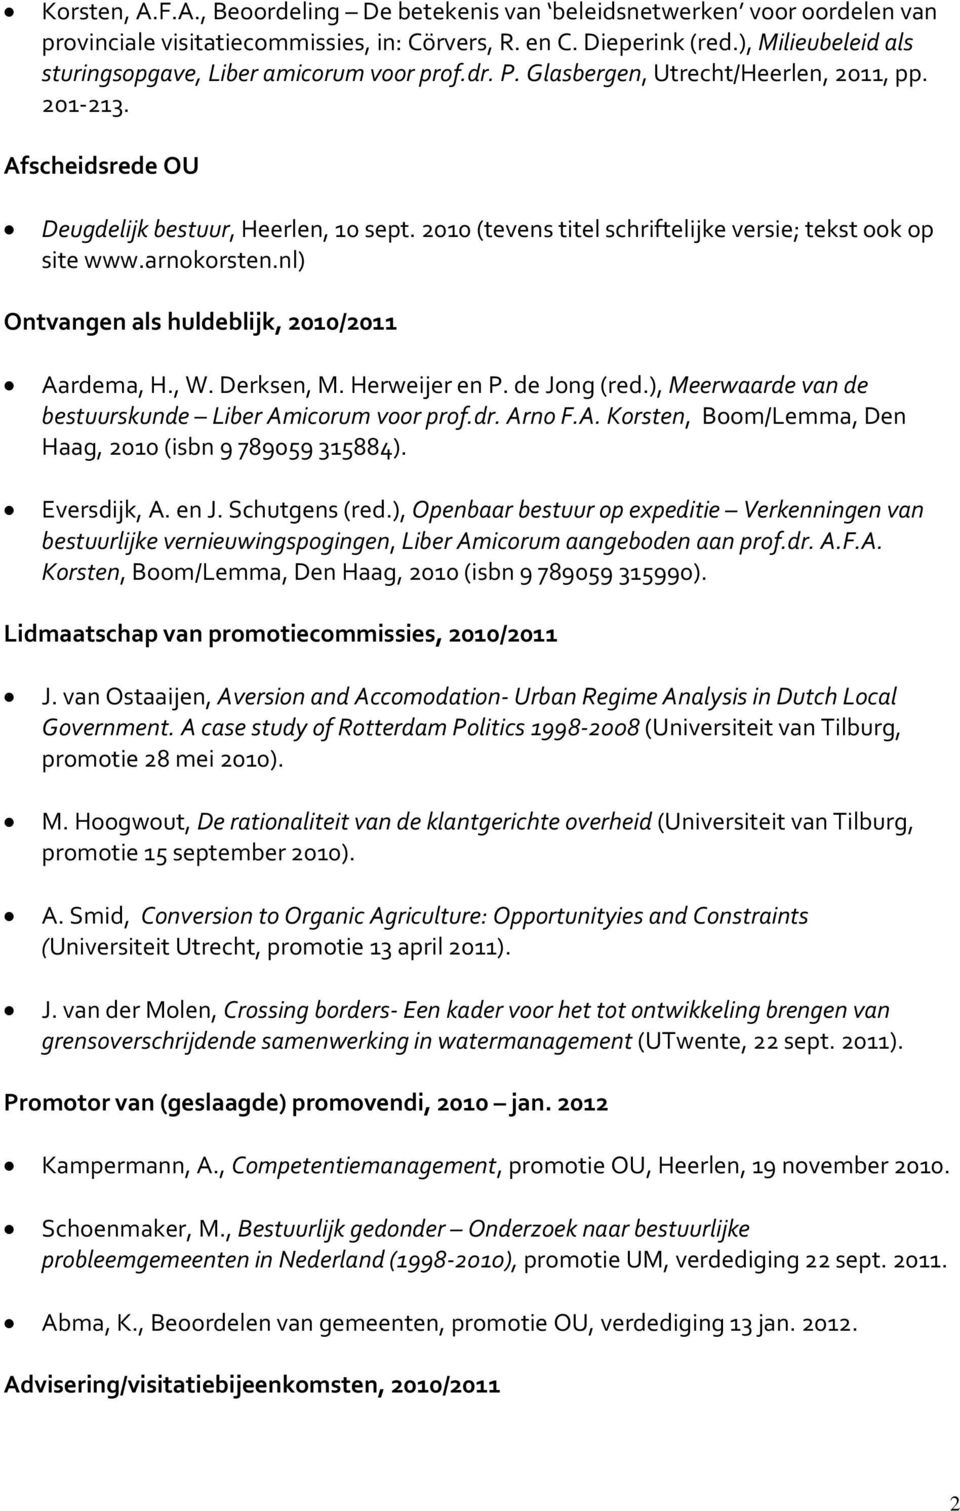 2010 (tevens titel schriftelijke versie; tekst ook op site www.arnokorsten.nl) Ontvangen als huldeblijk, 2010/2011 Aardema, H., W. Derksen, M. Herweijer en P. de Jong (red.